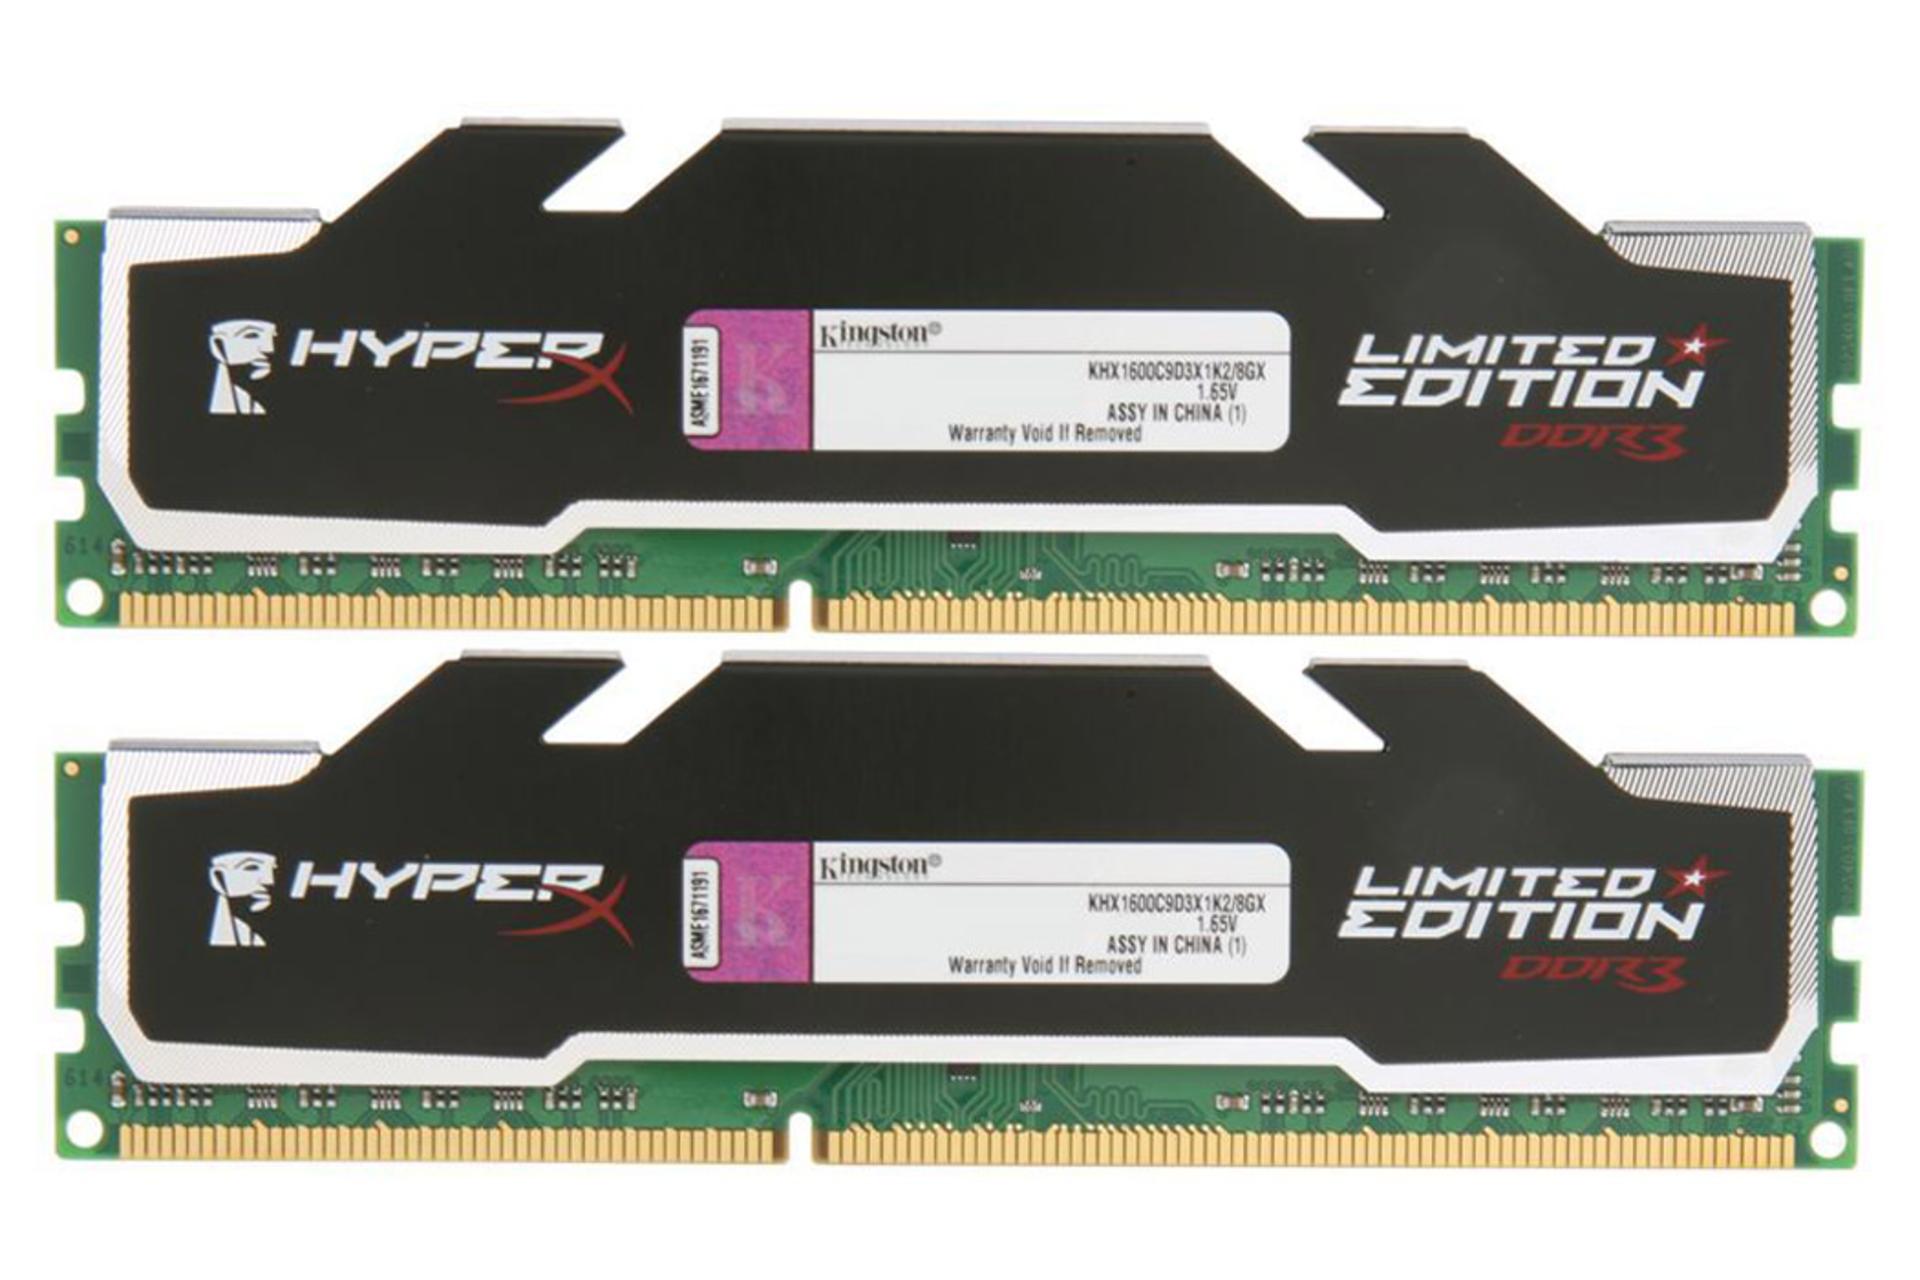 حافظه رم هایپر ایکس LIMITED EDITION ظرفیت 8 گیگابایت (2x4) از نوع DDR3-1600